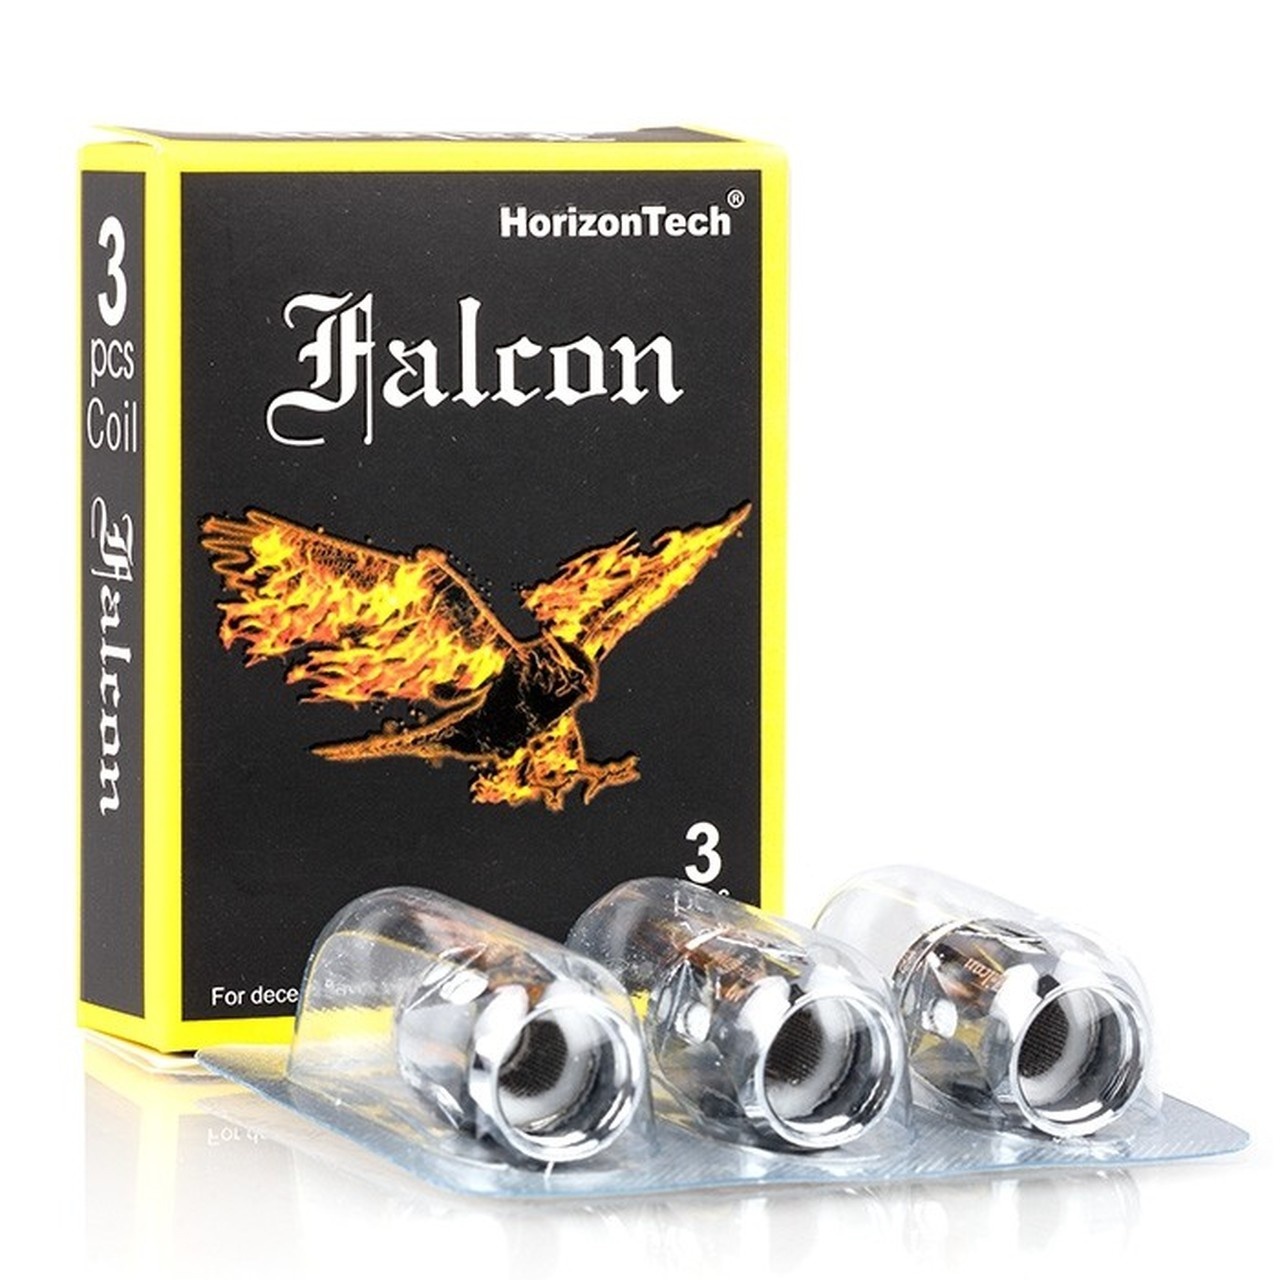 HorizonTech HorizonTech Falcon M-Triple Coil Box